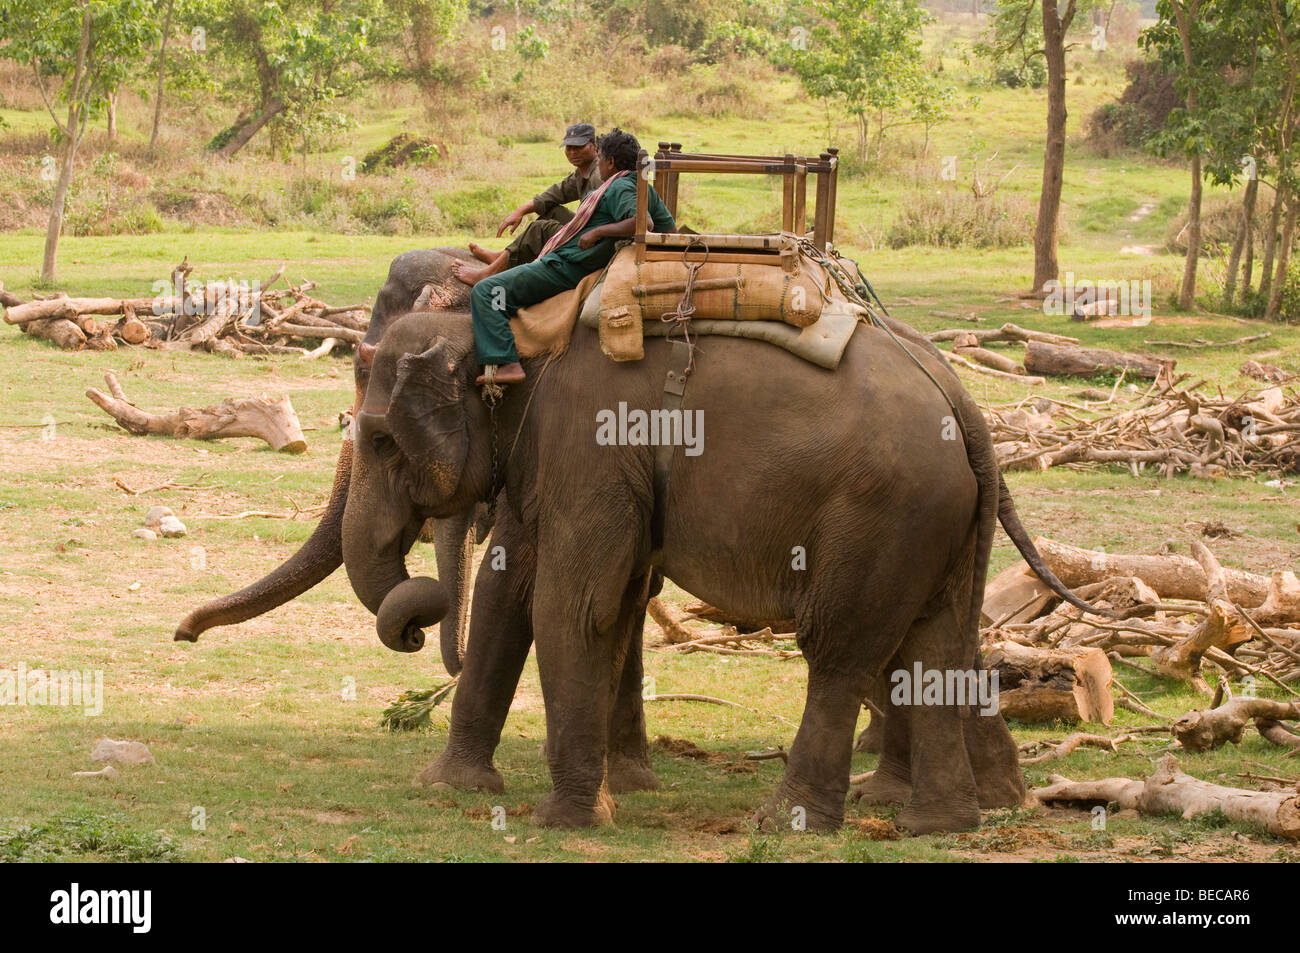 L'éléphant indien sur une pause Banque D'Images